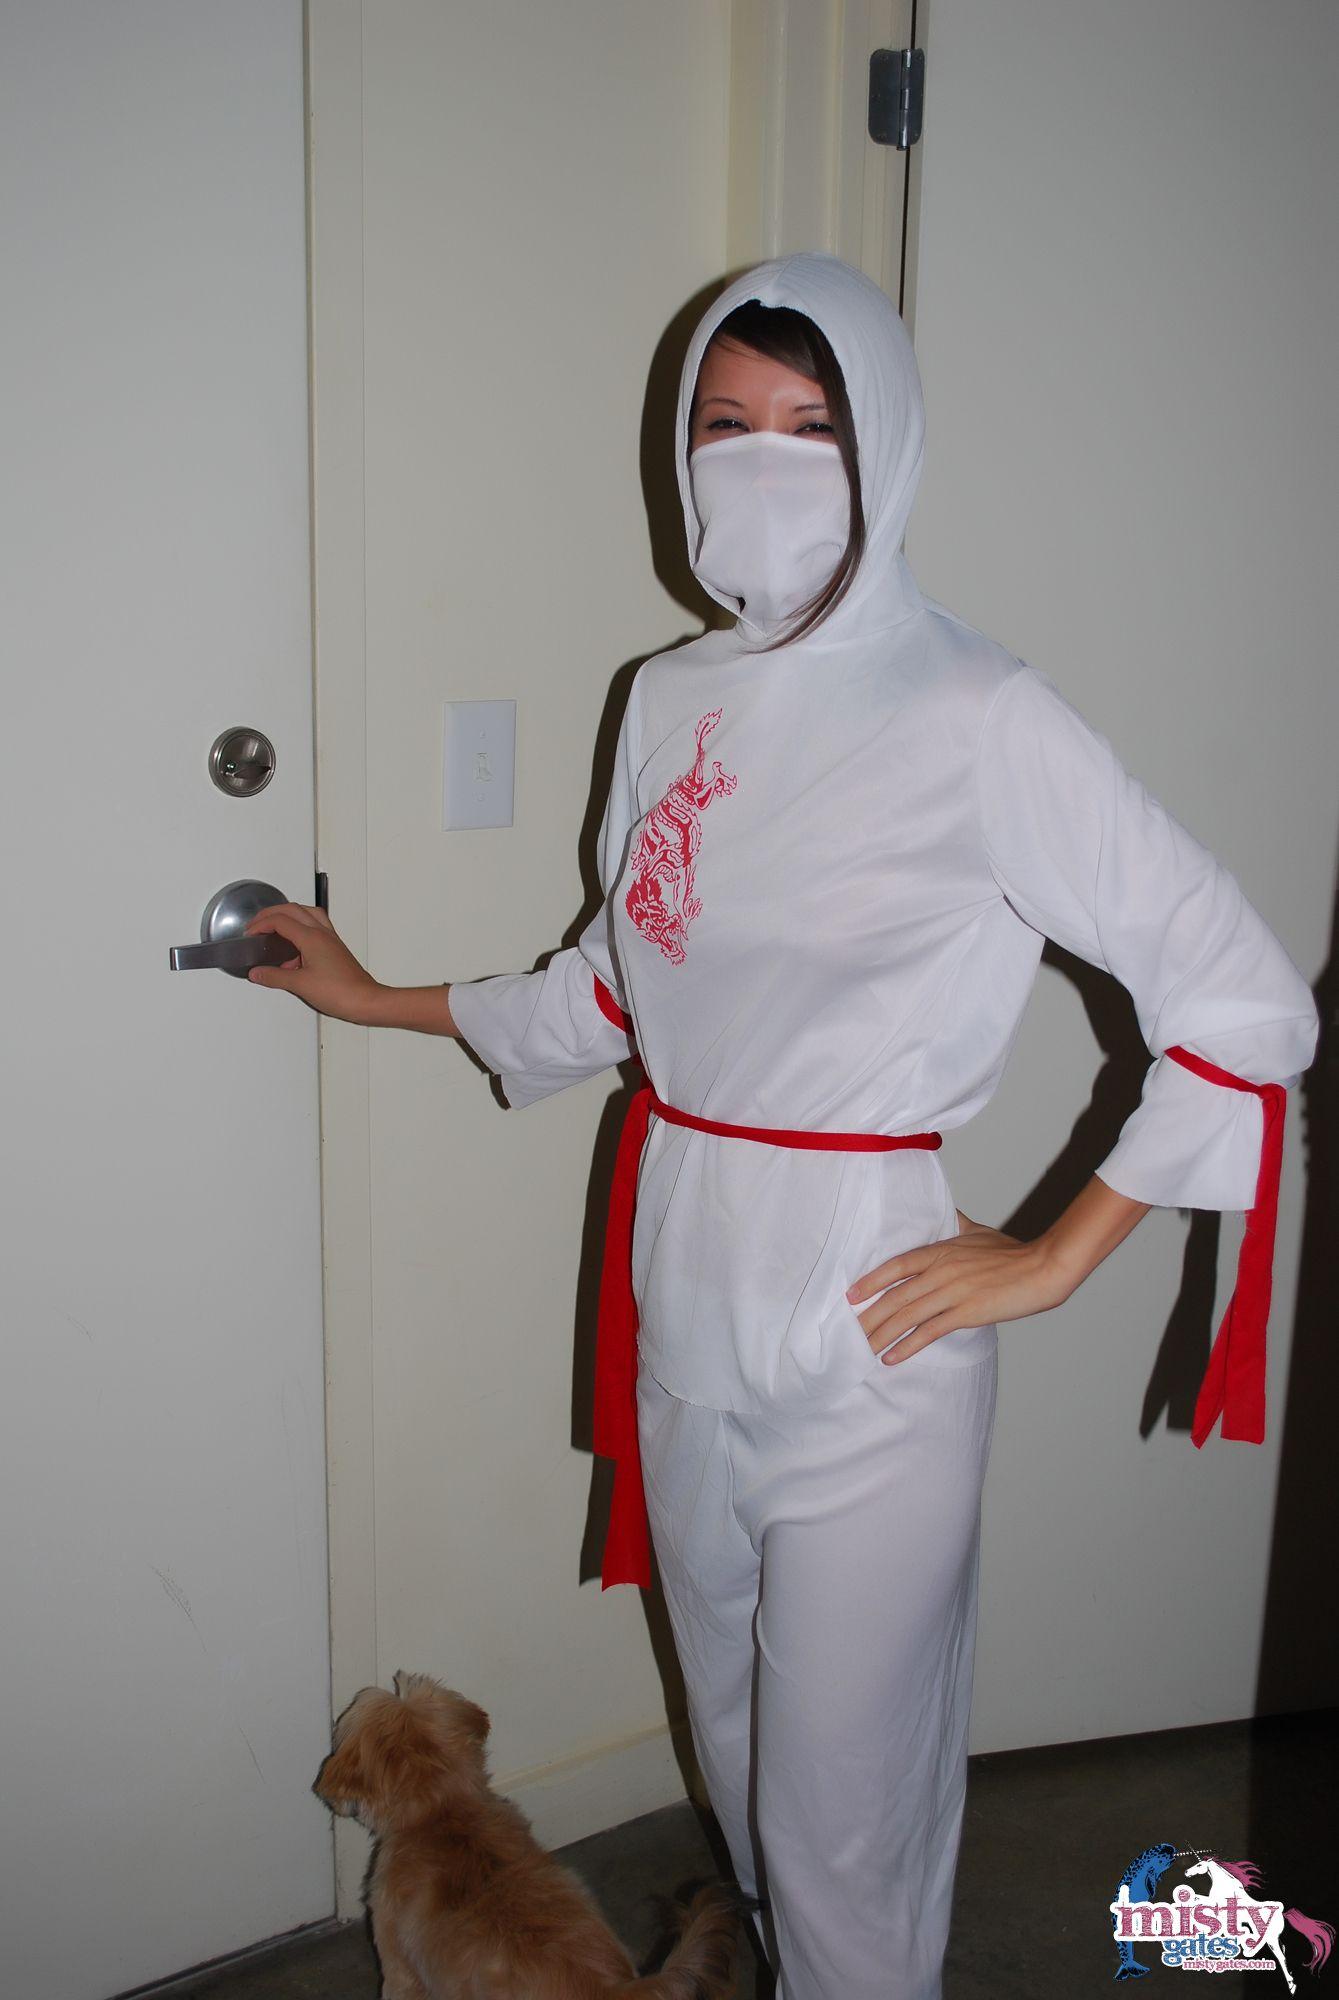 Immagini di misty gates vestito come un ninja bianco caldo
 #59592921